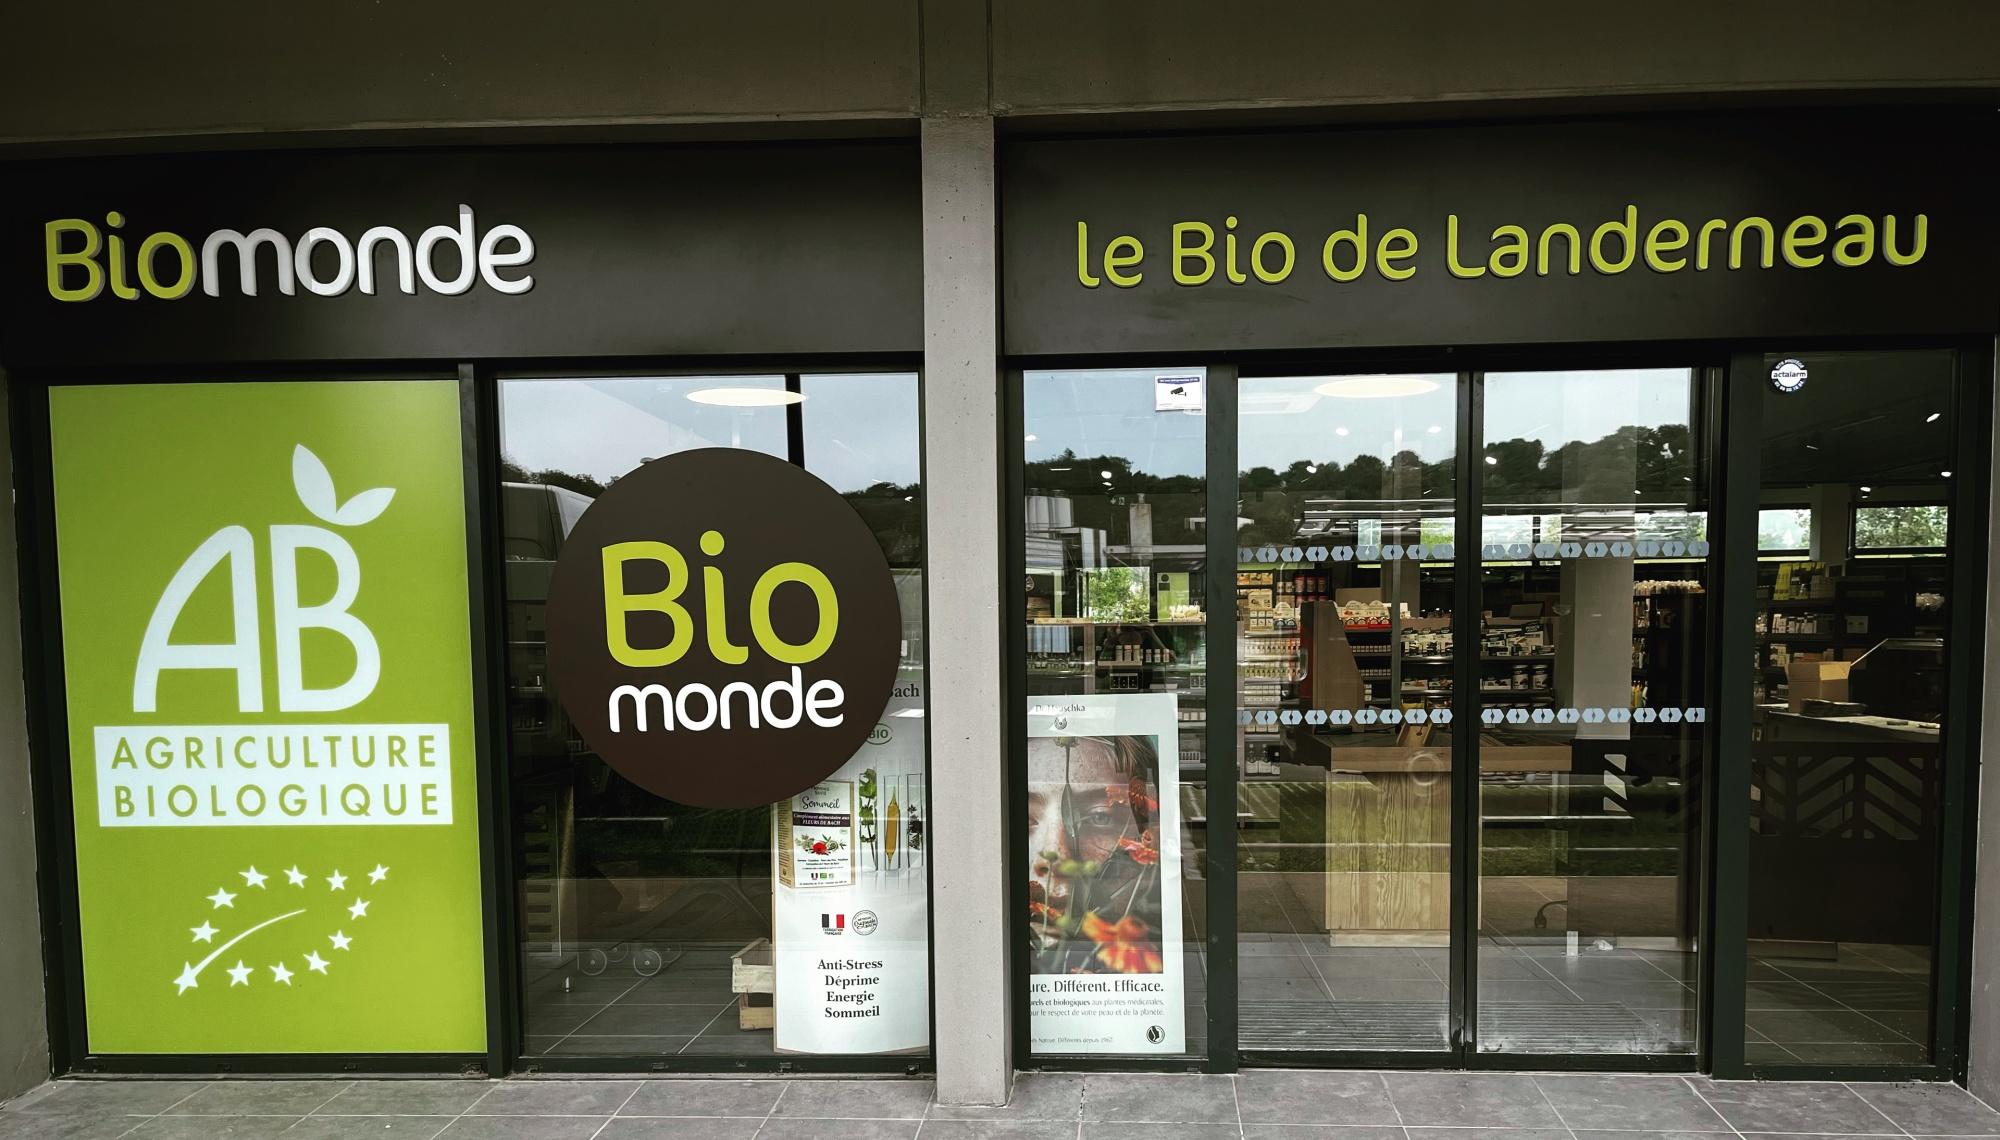 Biomonde Landerneau